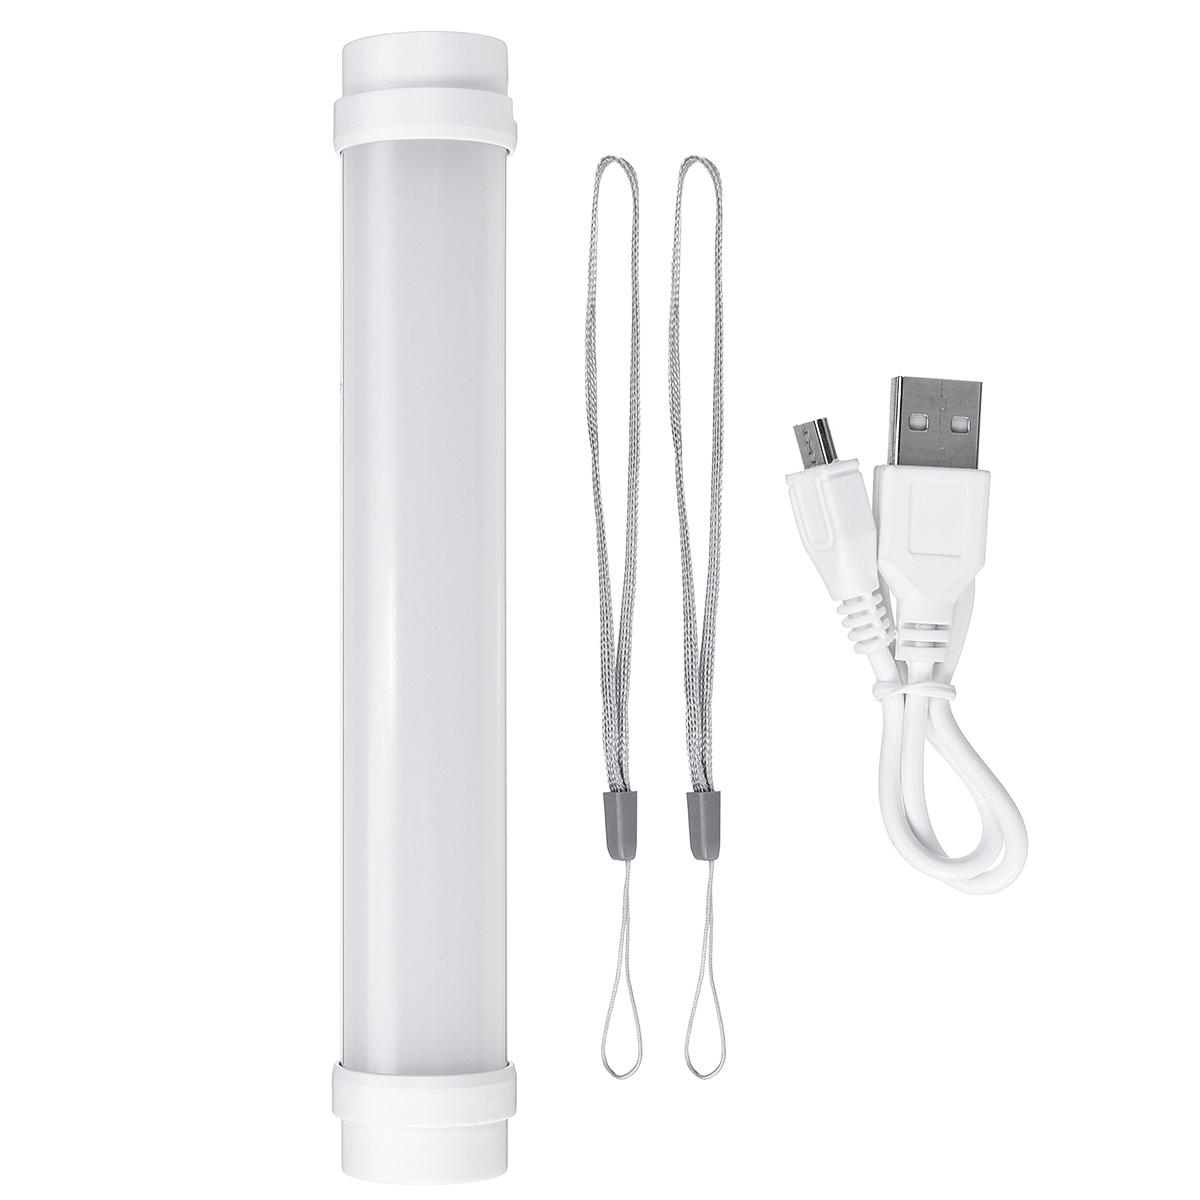 Lámpara LED de tienda de campaña al aire libre, tubo de luz de emergencia y cargador USB de banco de energía de 1800 mAh